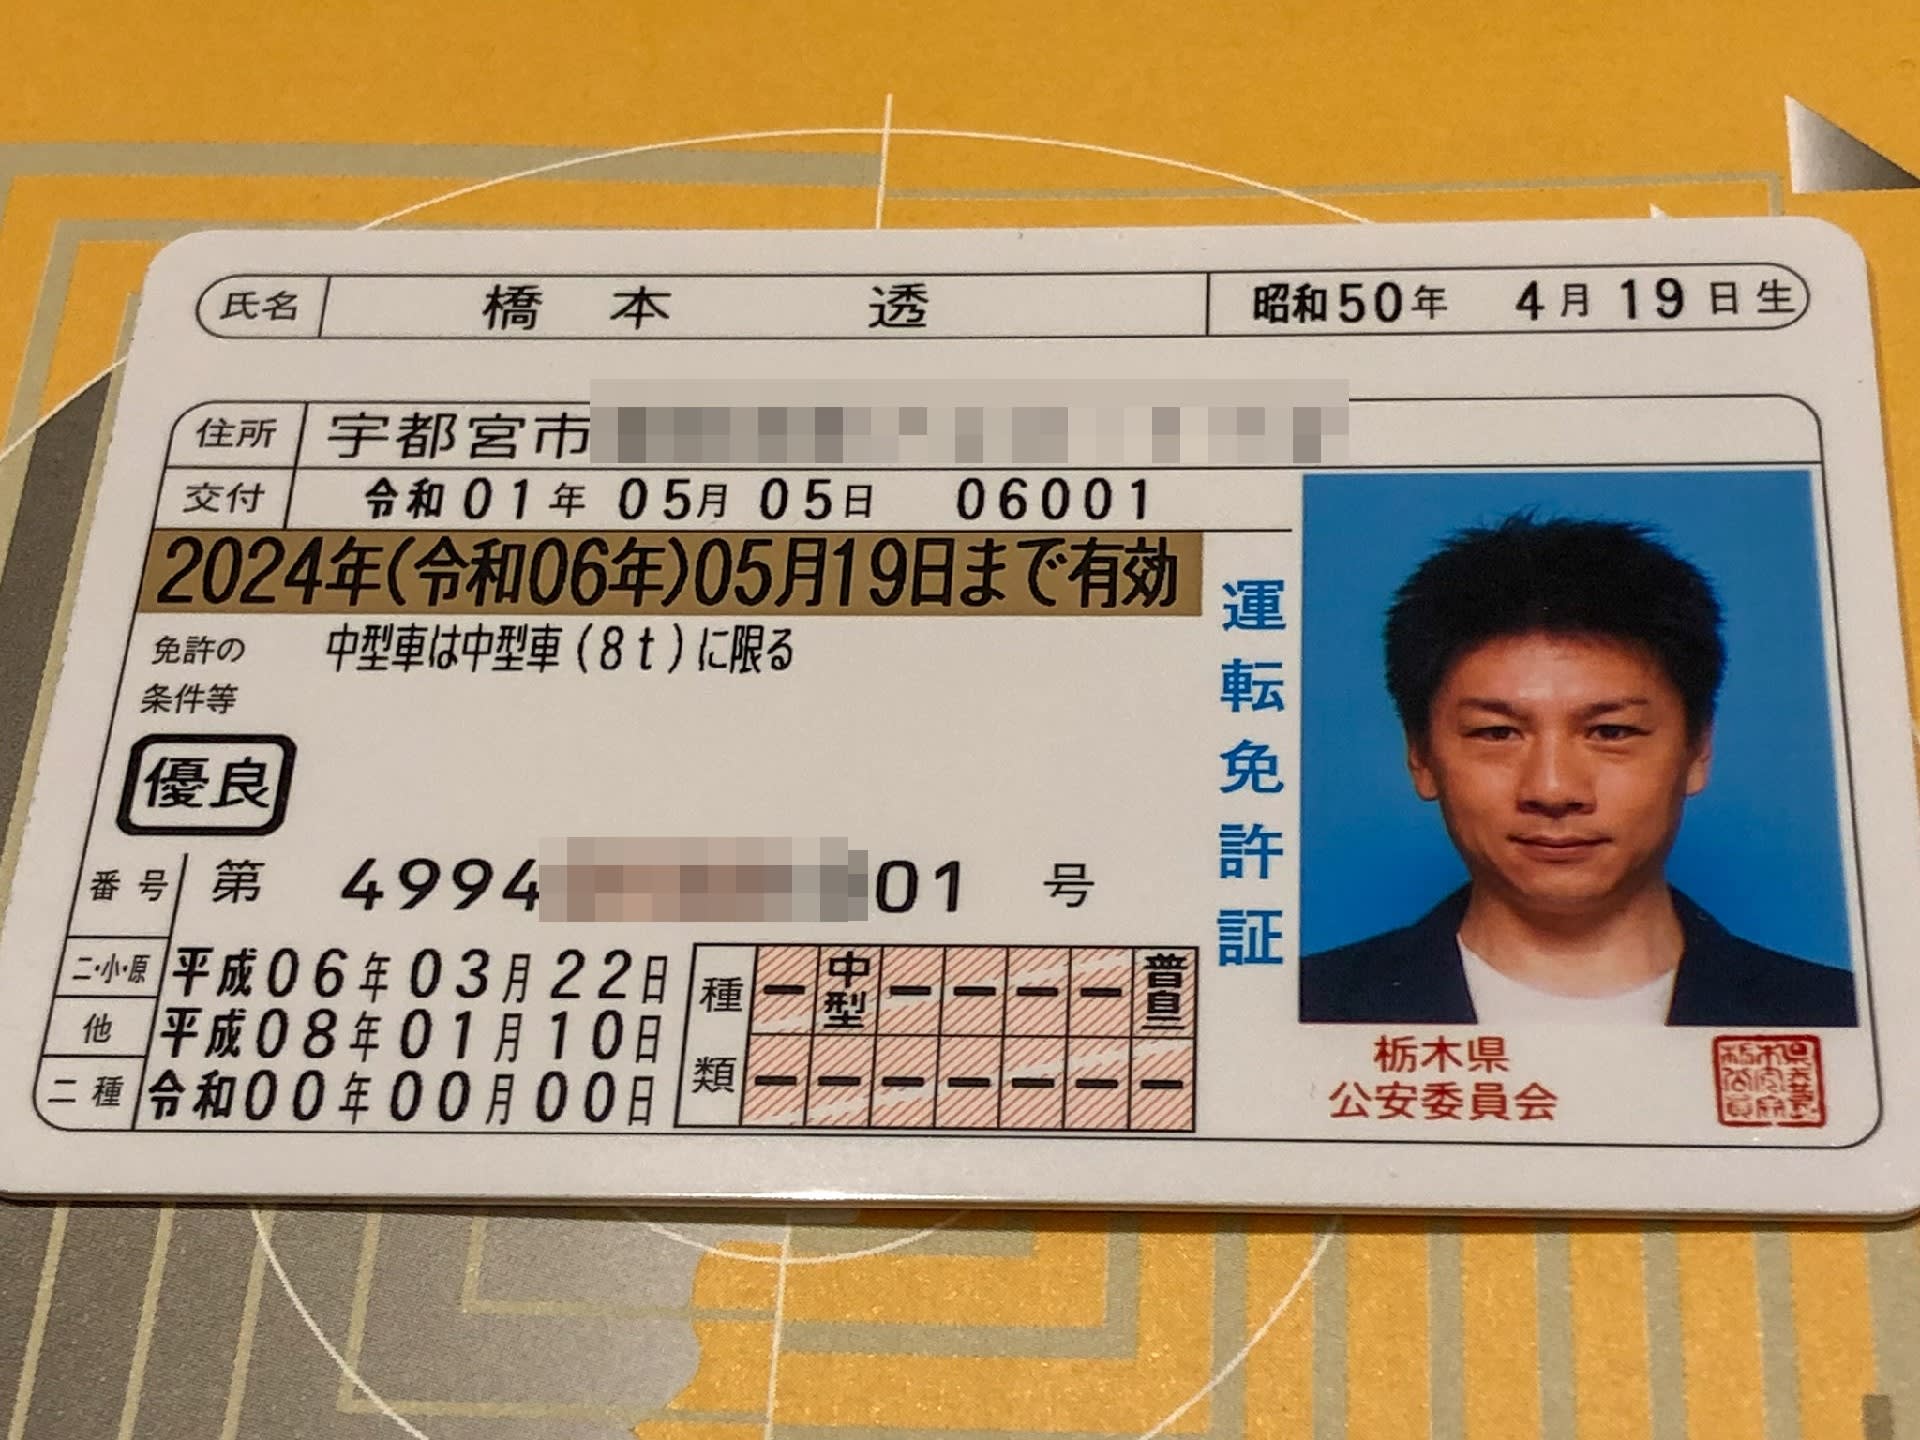 令和 の運転免許証 栃木県内で一番に交付を受けました スペビトピックス